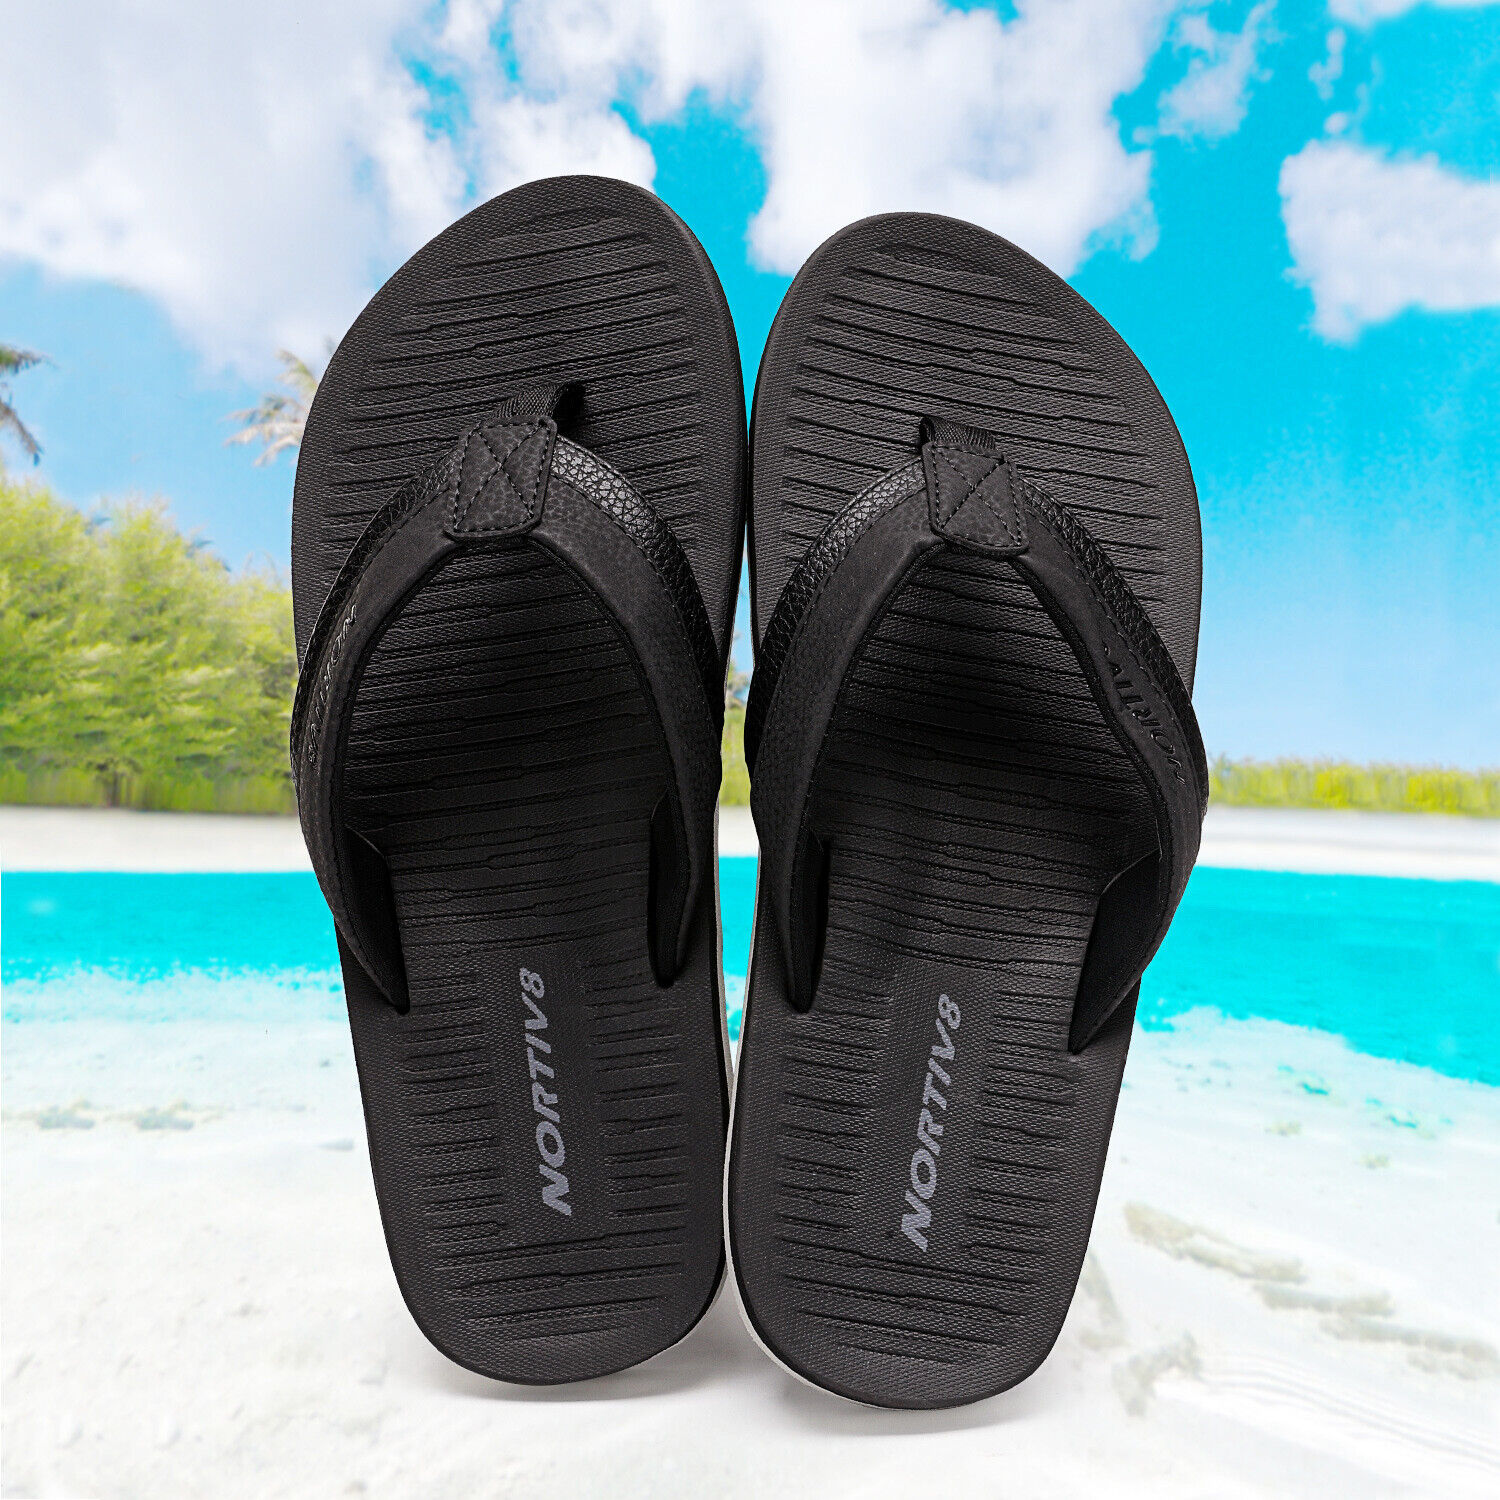 Men's Flip Flops Thong Sandals Comfortable Light Weight Beach Shoes Size US7-15